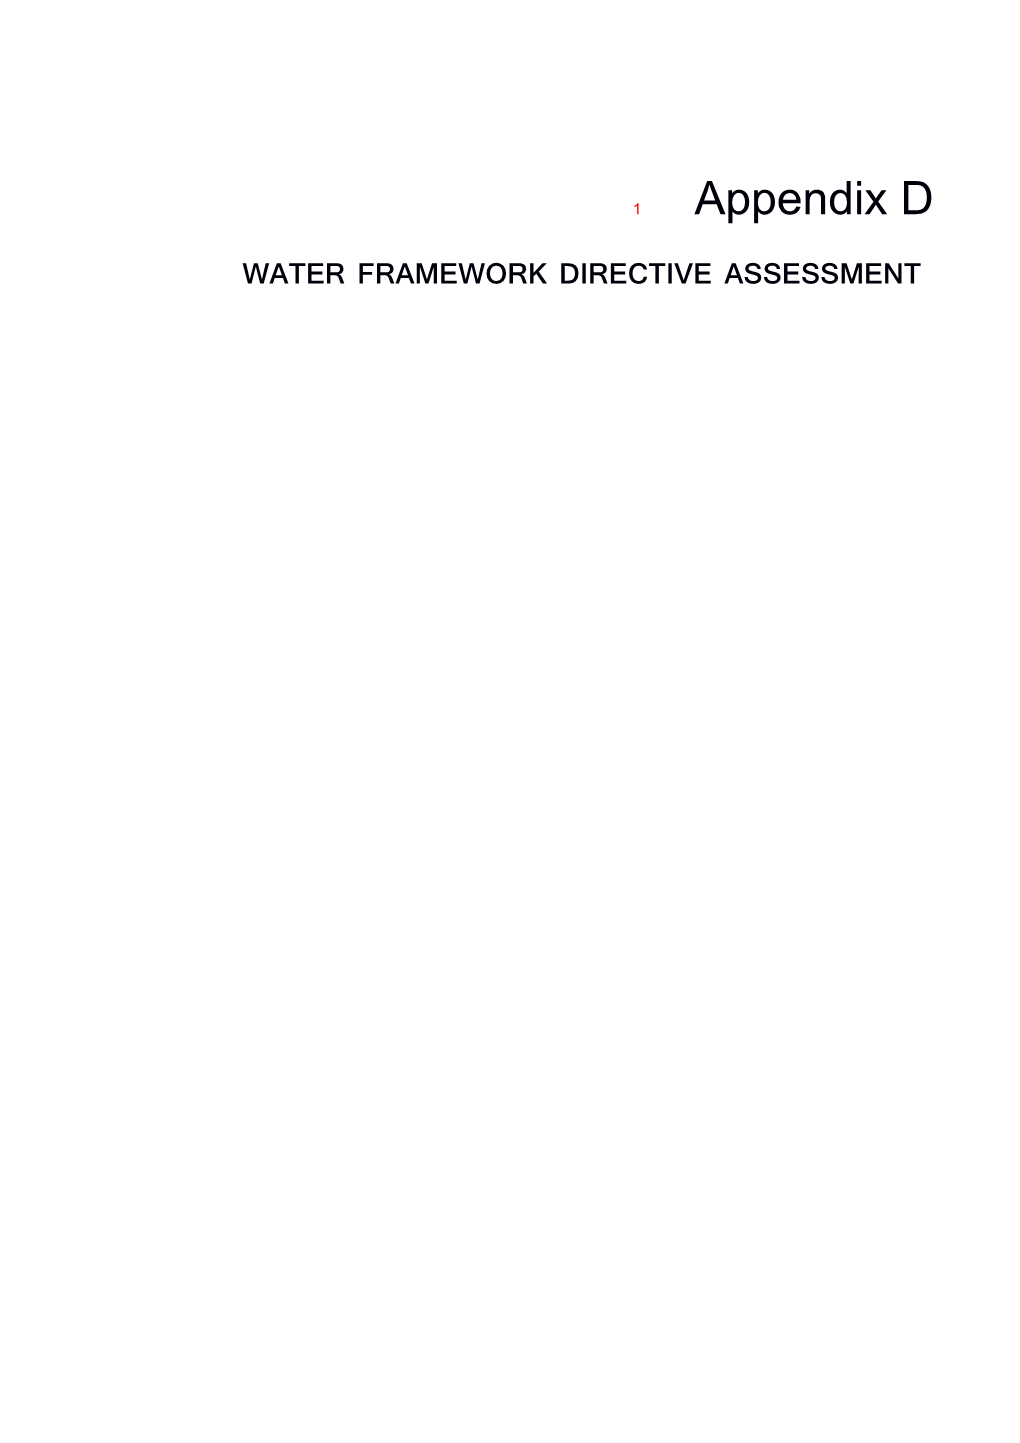 3Water Framework Directive Compliance Assessment